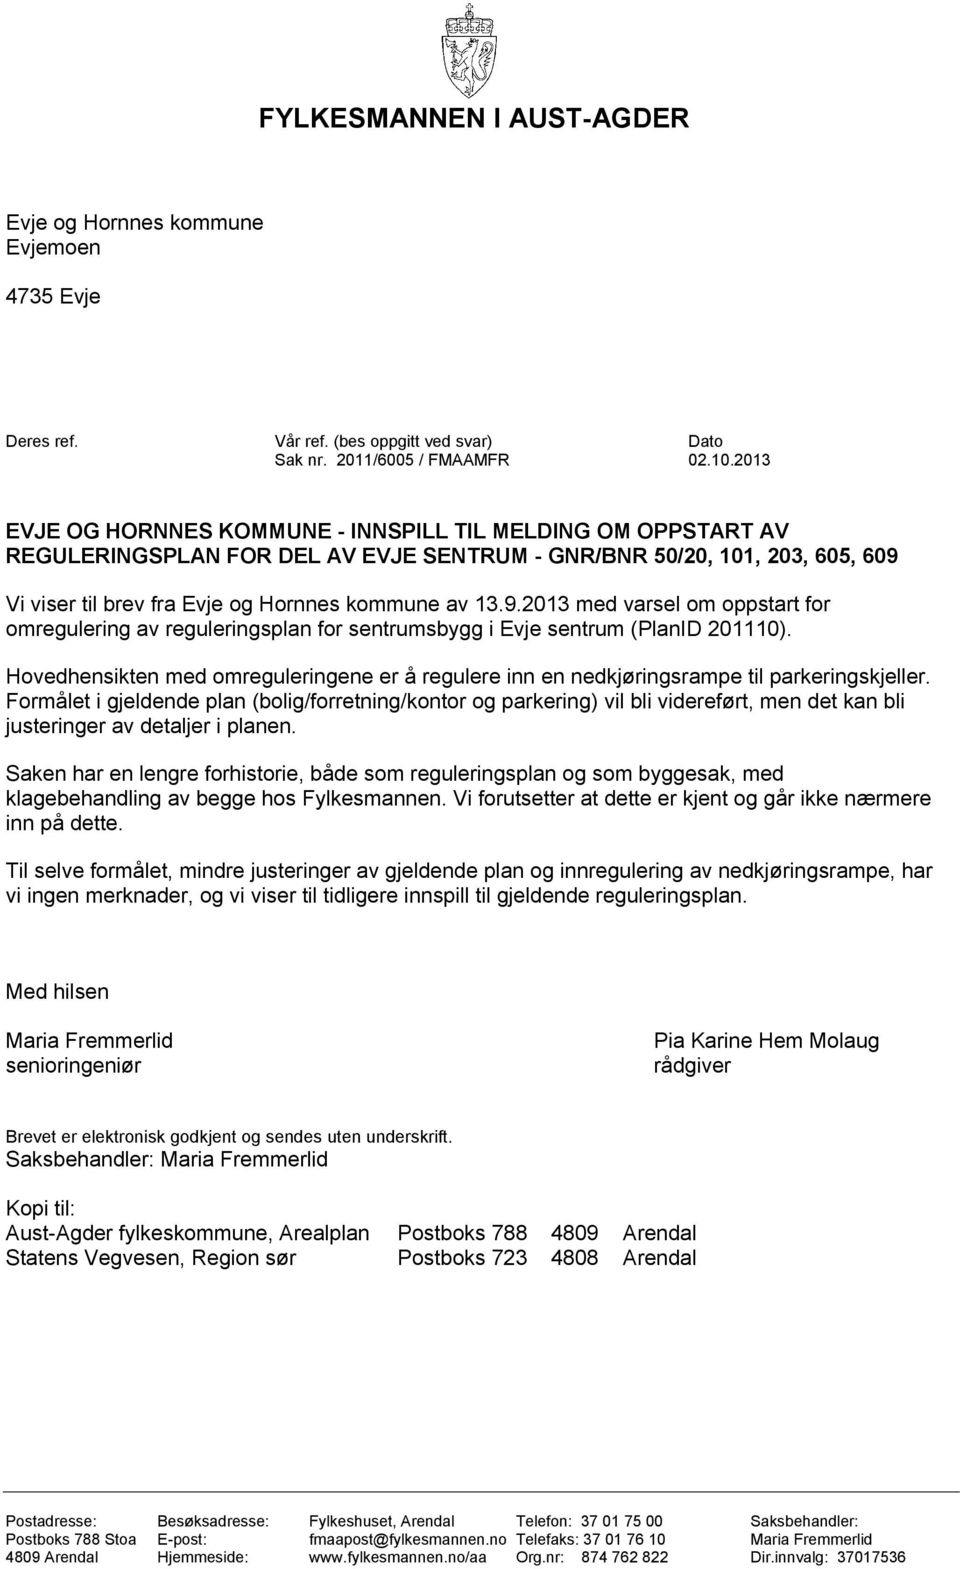 Vi viser til brev fra Evje og Hornnes kommune av 13.9.2013 med varsel om oppstart for omregulering av reguleringsplan for sentrumsbygg i Evje sentrum (PlanID 201110).